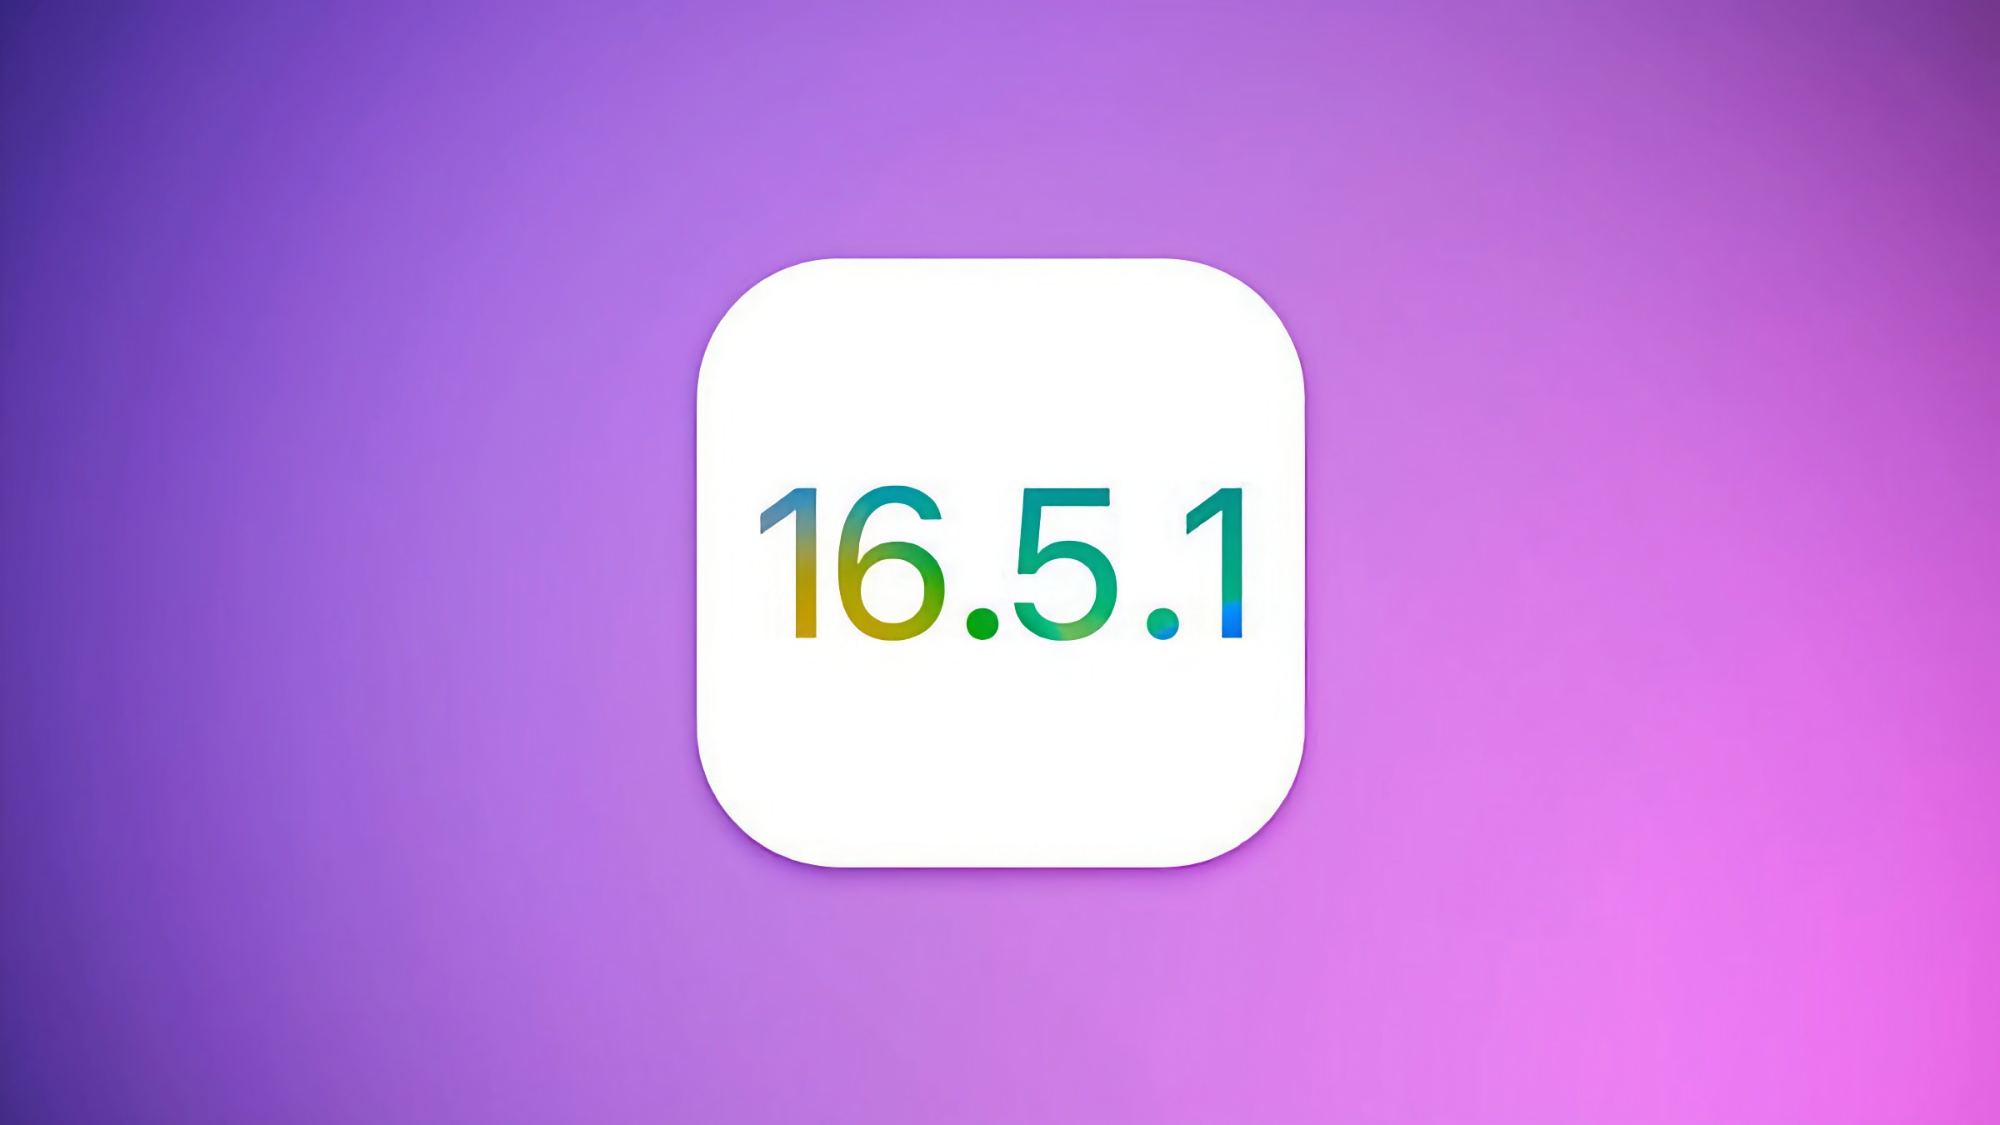 Apple prepares iOS 16.5.1 update for iPhone